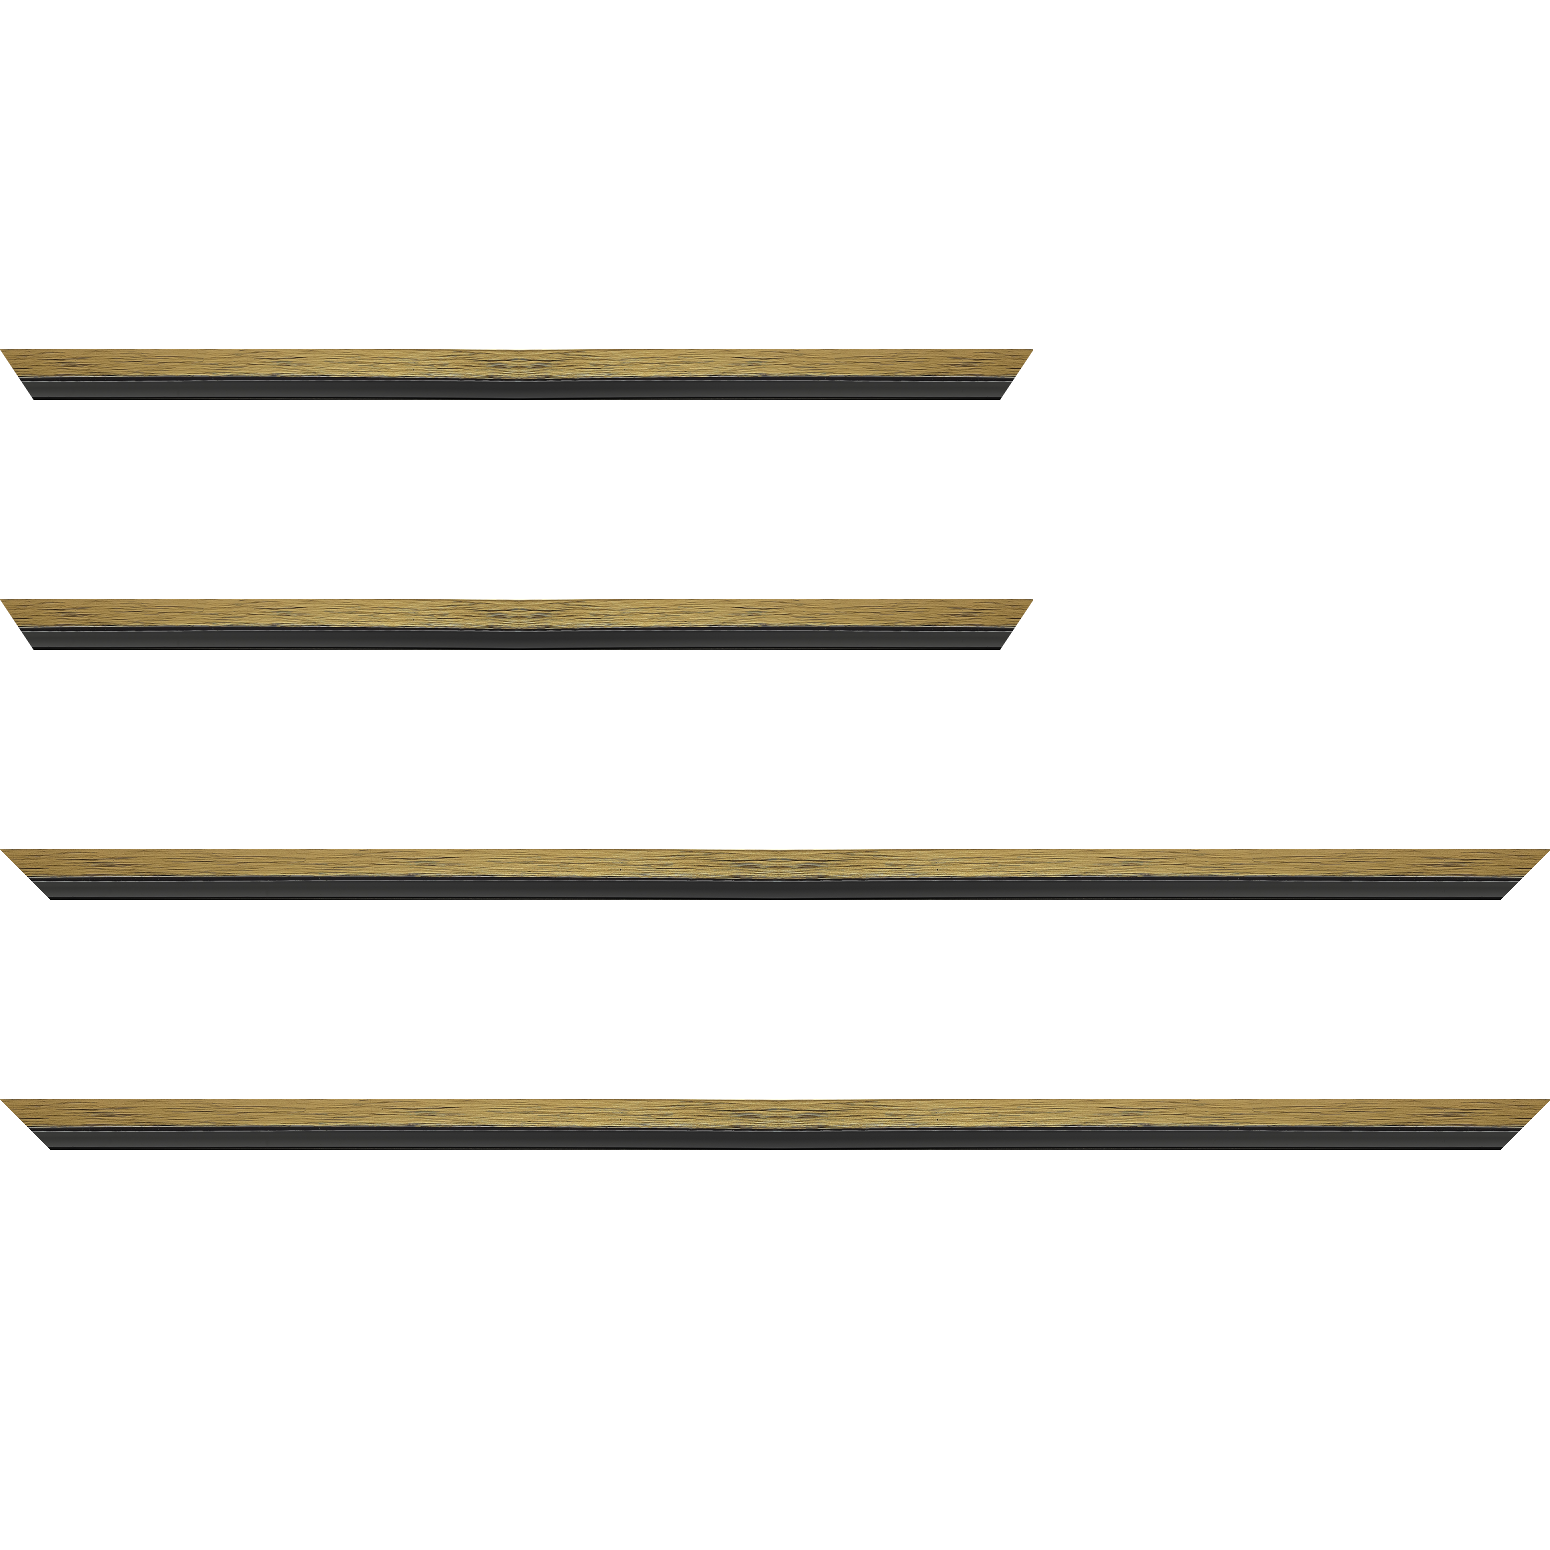 Baguette bois profil plat largeur 1.6cm couleur or contemporain filet noir en retrait de la face du cadre de 6mm assurant un effet très original - 30x60